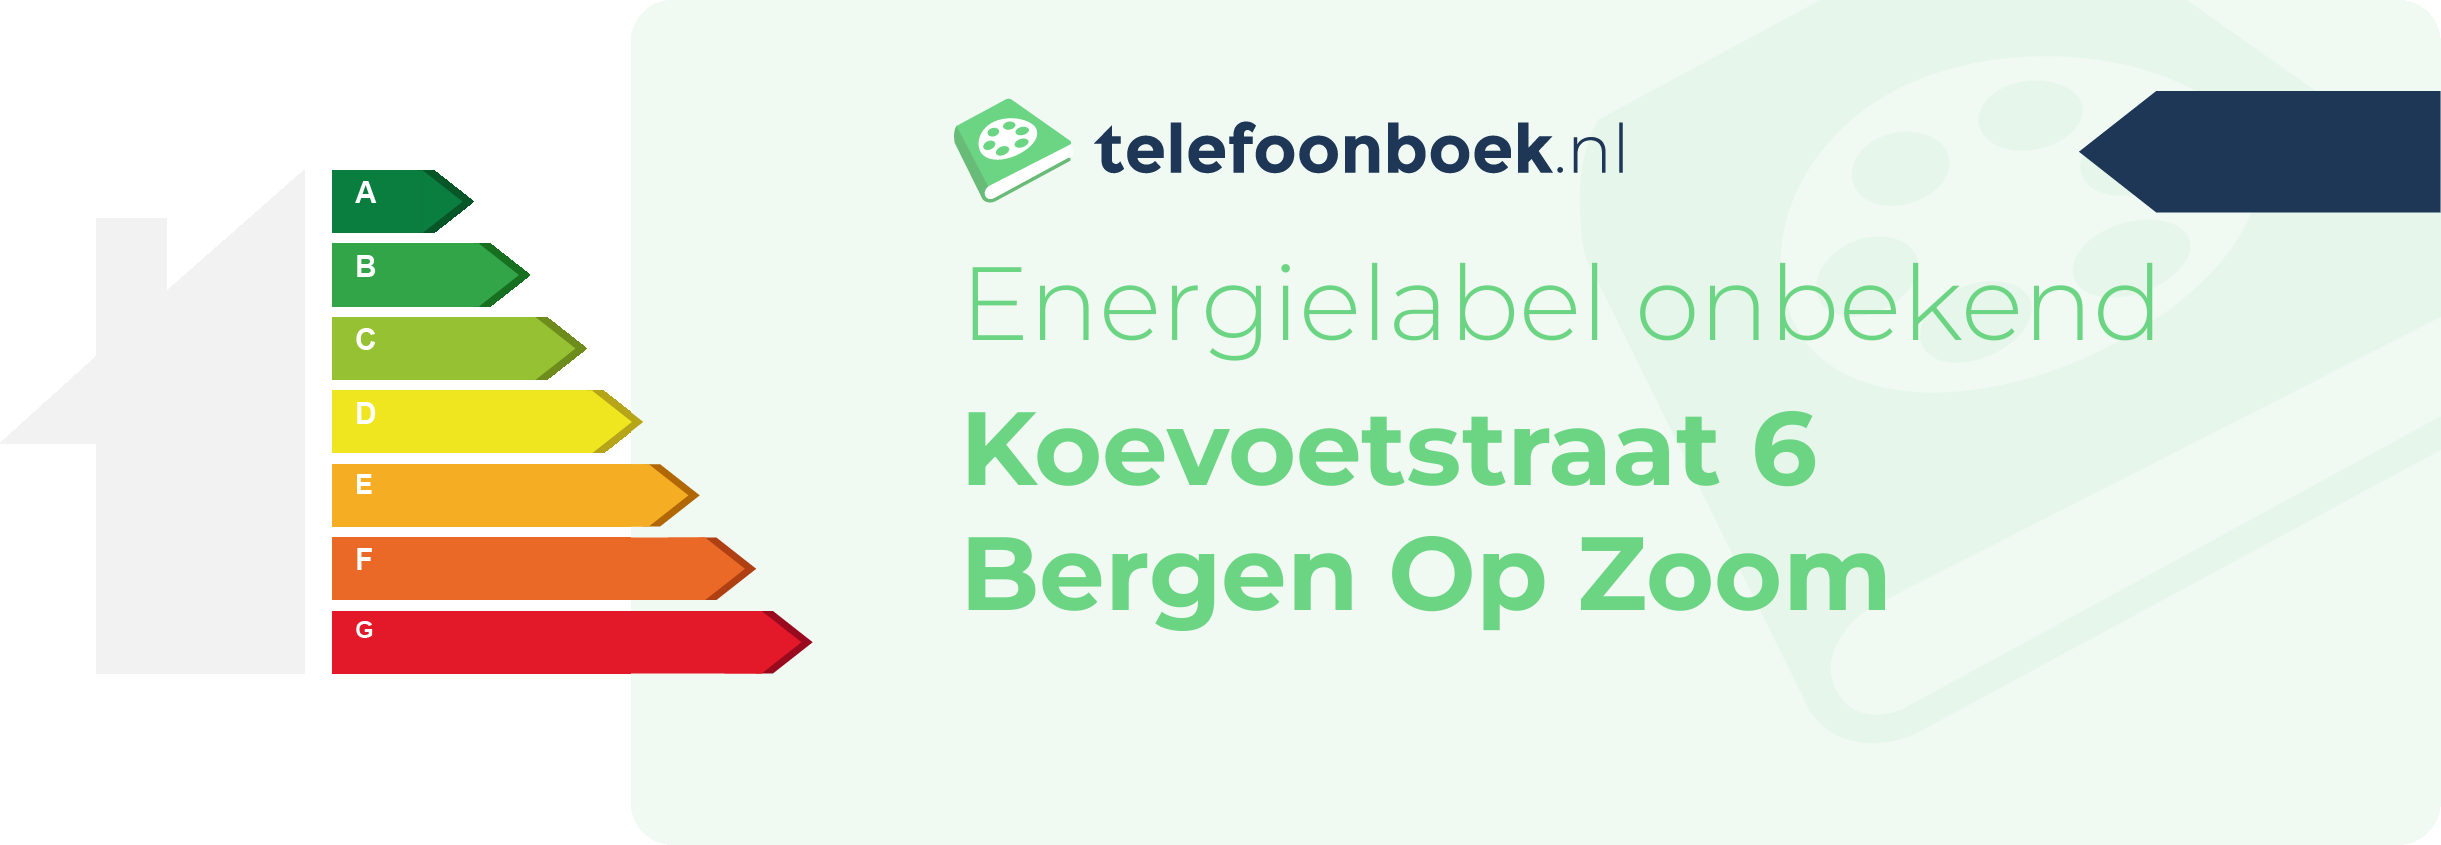 Energielabel Koevoetstraat 6 Bergen Op Zoom